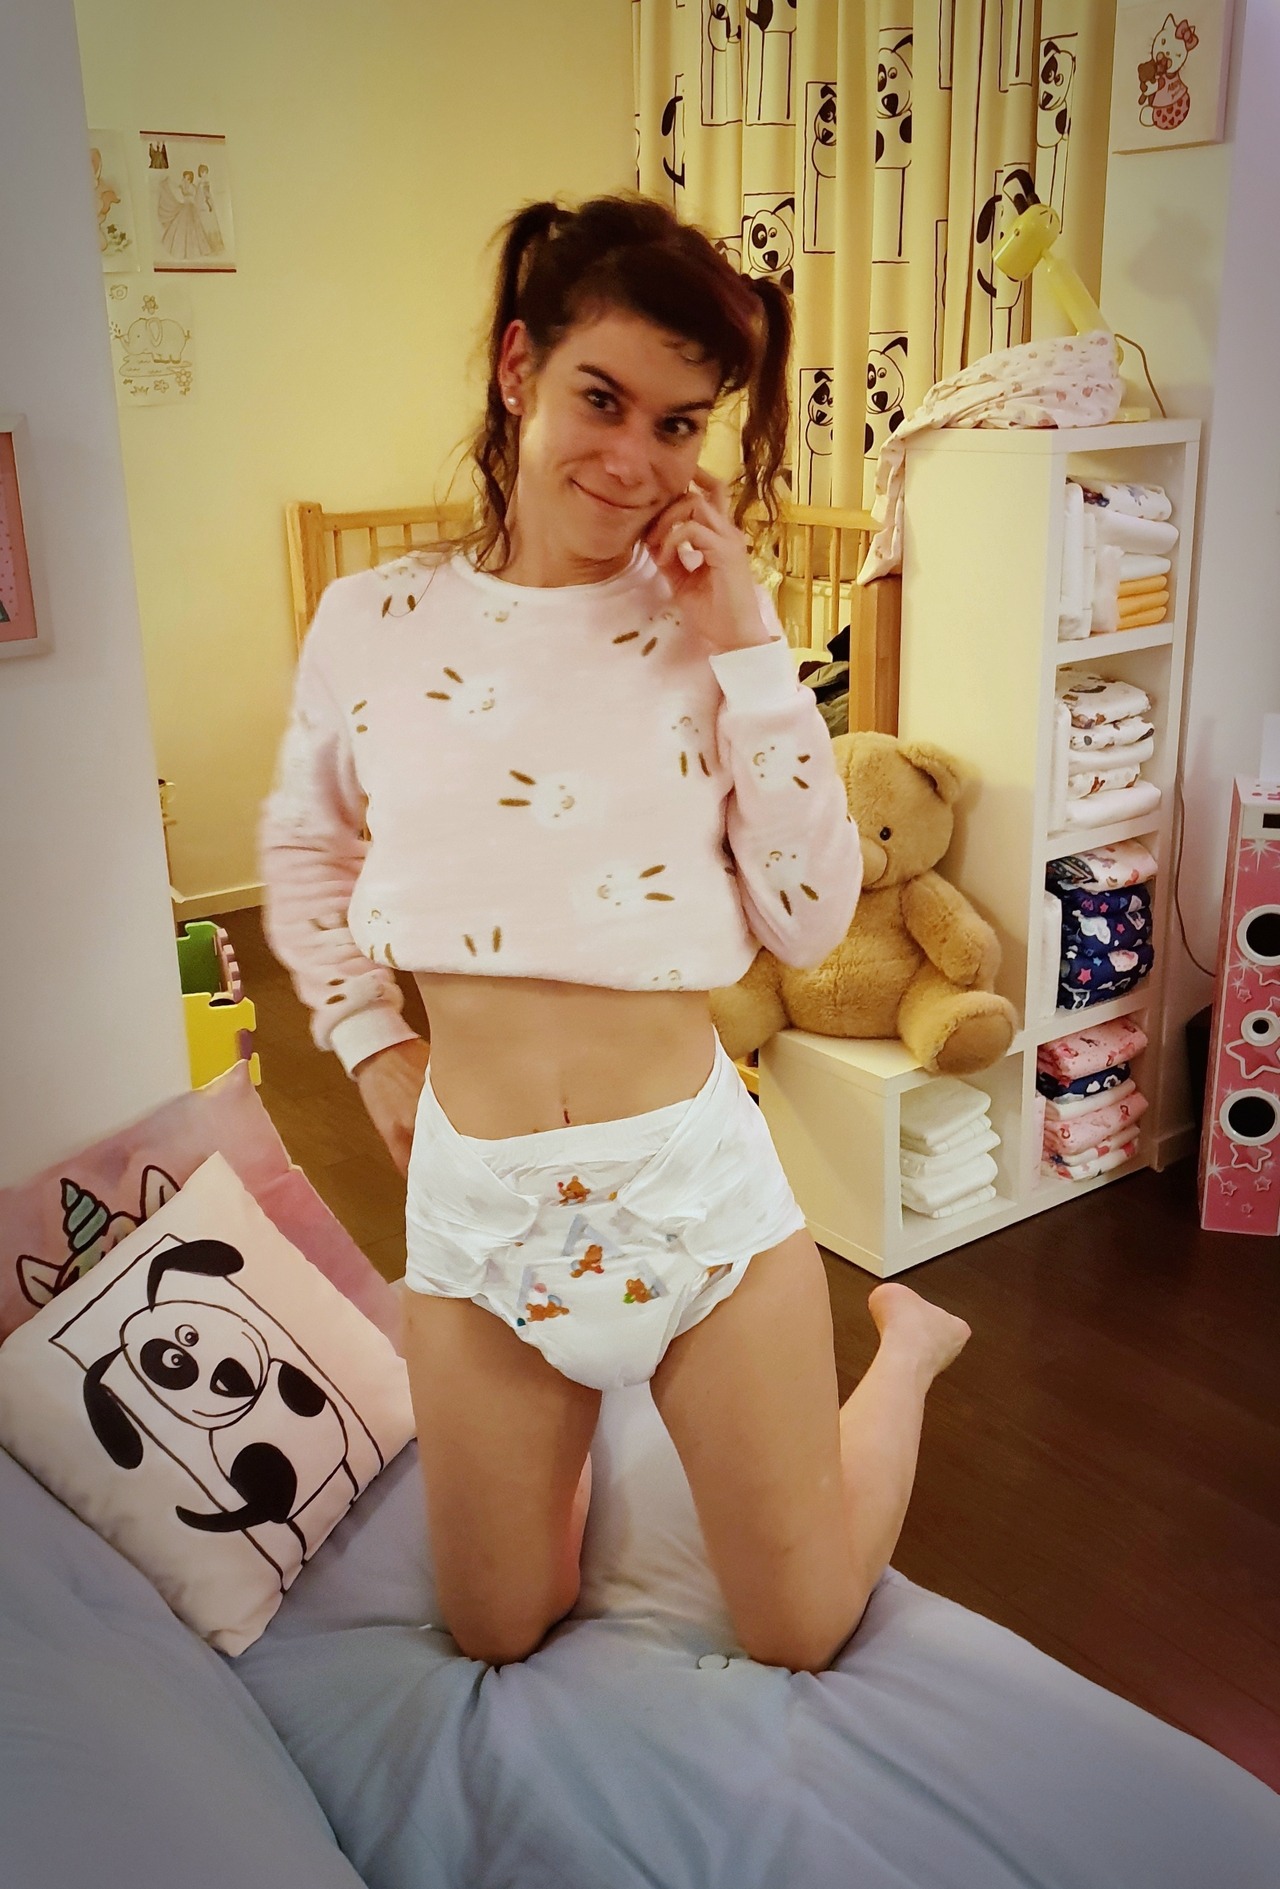 Diaper Girls - Teen diaper girls abhunnies - Porn pictures